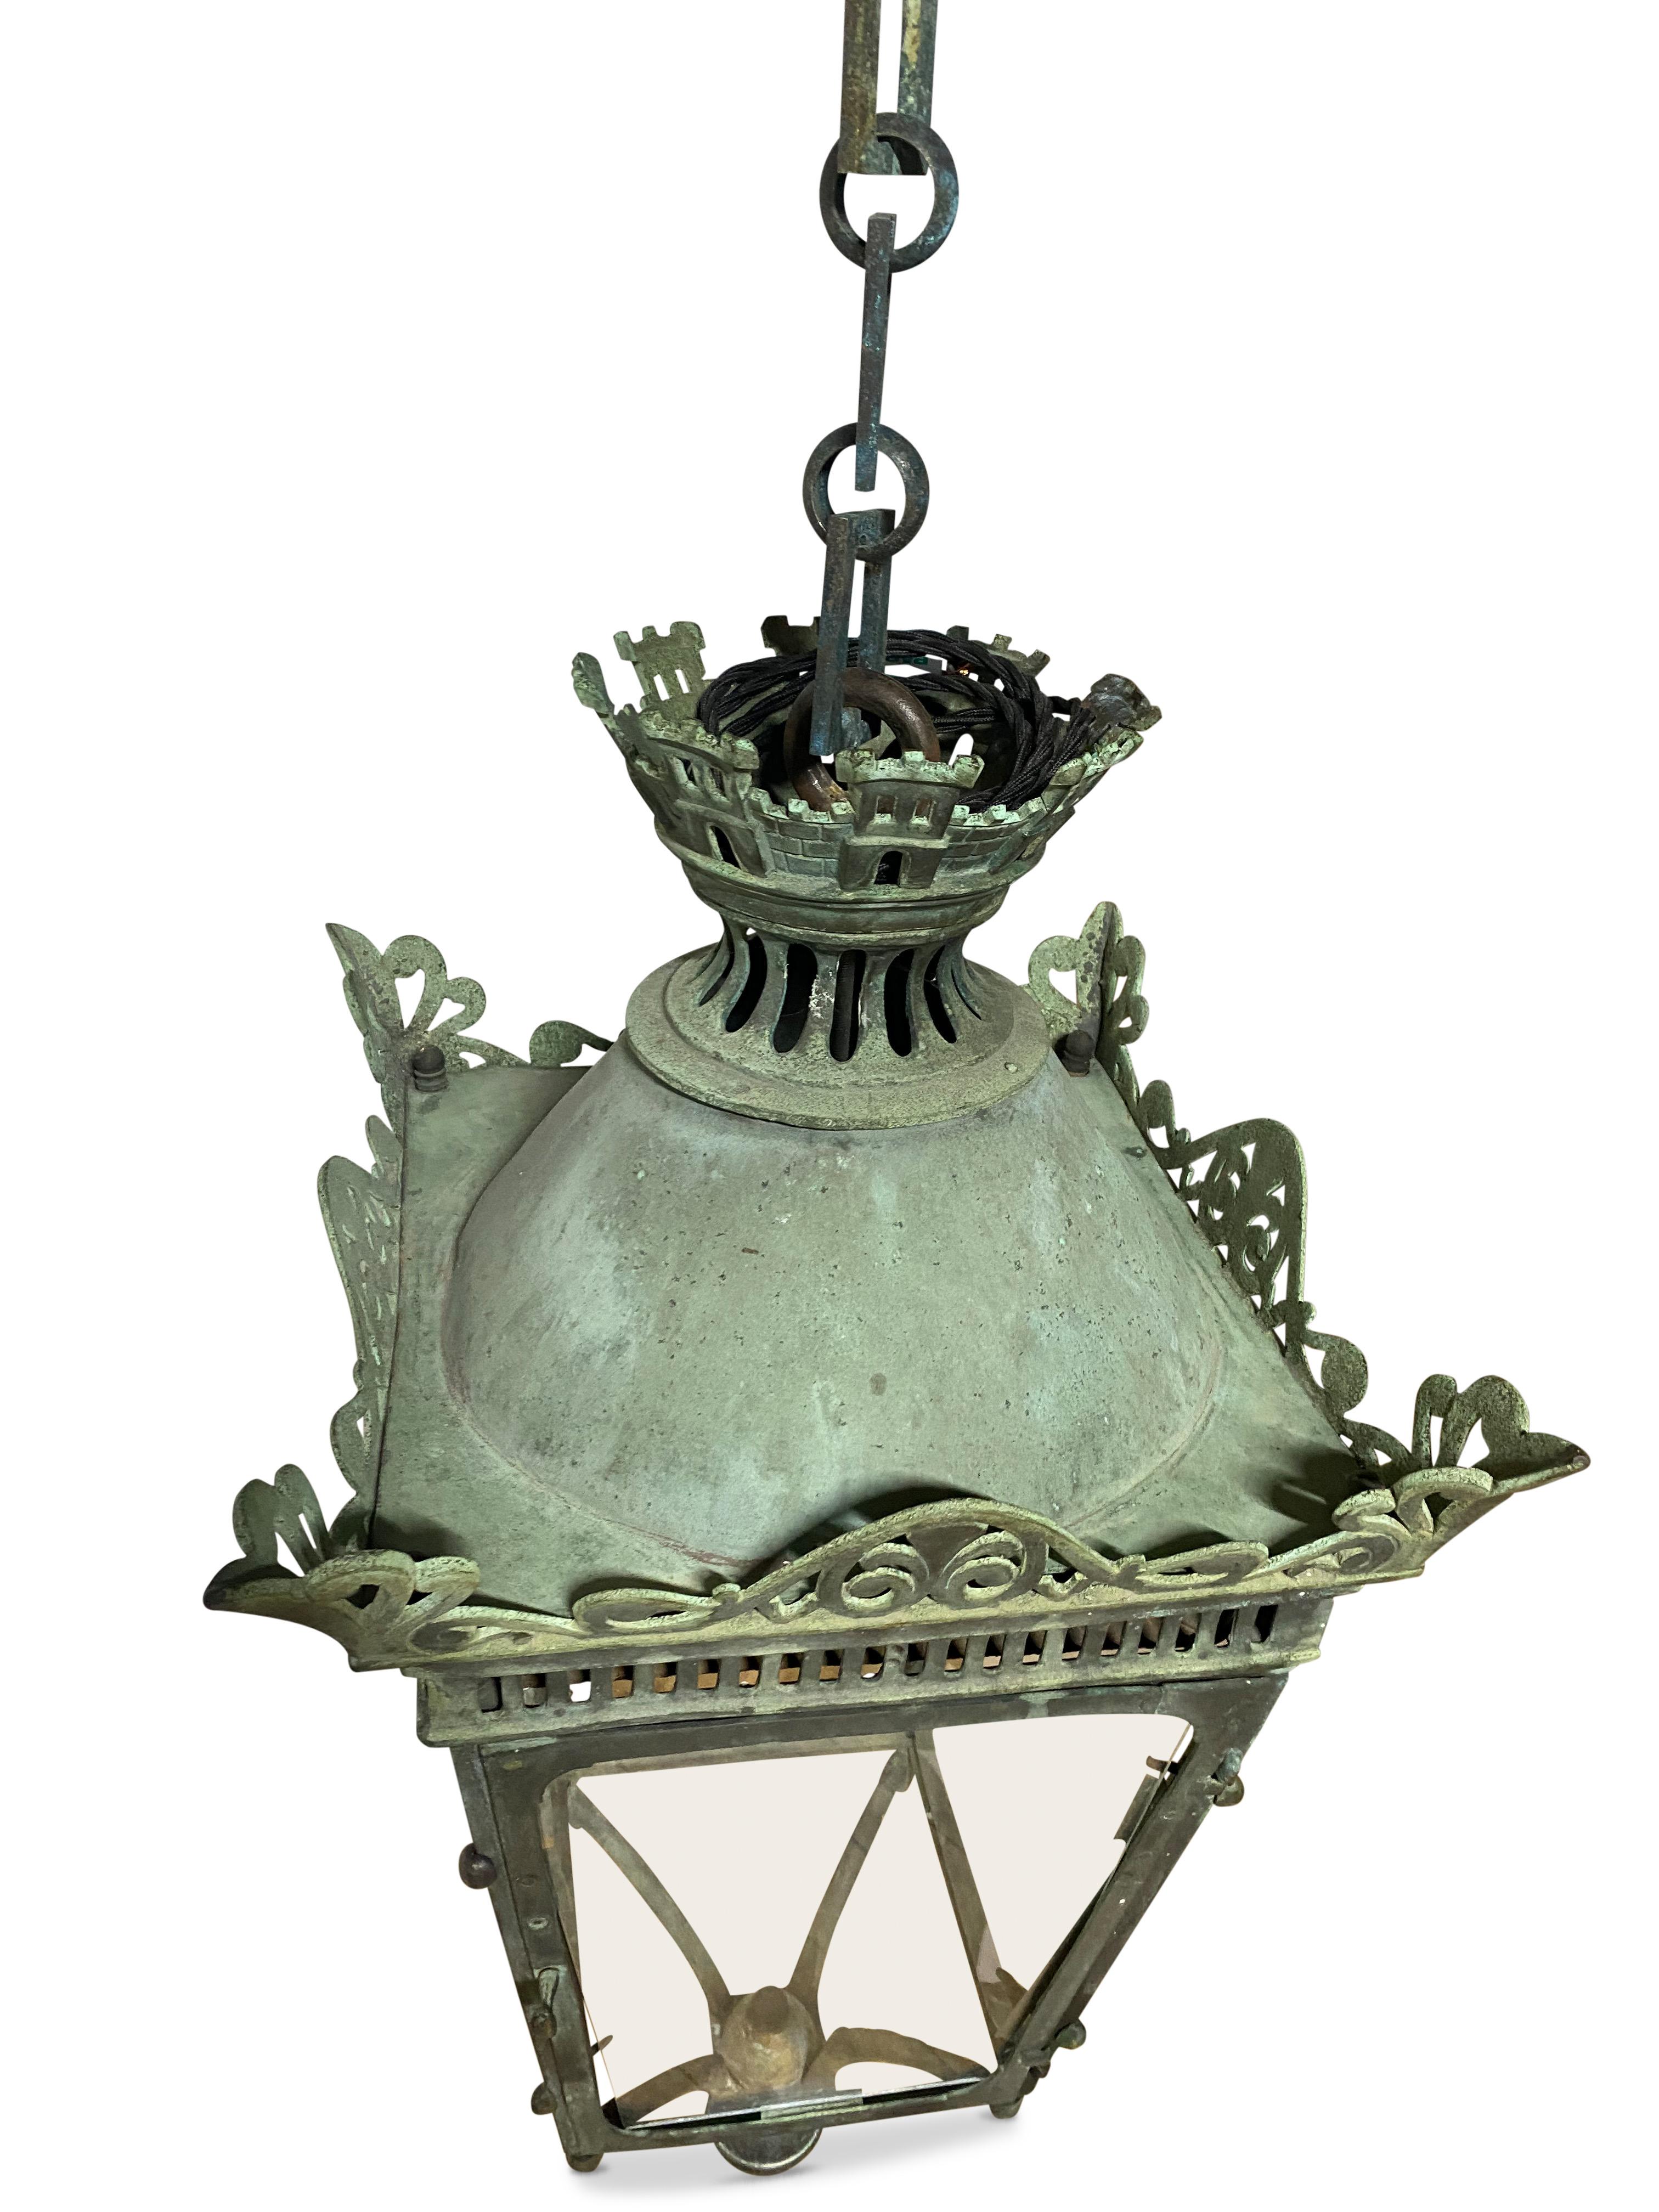 Fantastique et rare lanterne suspendue en cuivre vert du XIXe siècle avec chaîne.
Il s'agit d'une fabuleuse lanterne en cuivre vert-de-gris entièrement émaillée, dotée d'un magnifique cadre percé, d'une tourelle et d'une chaîne à maillons hexagonaux